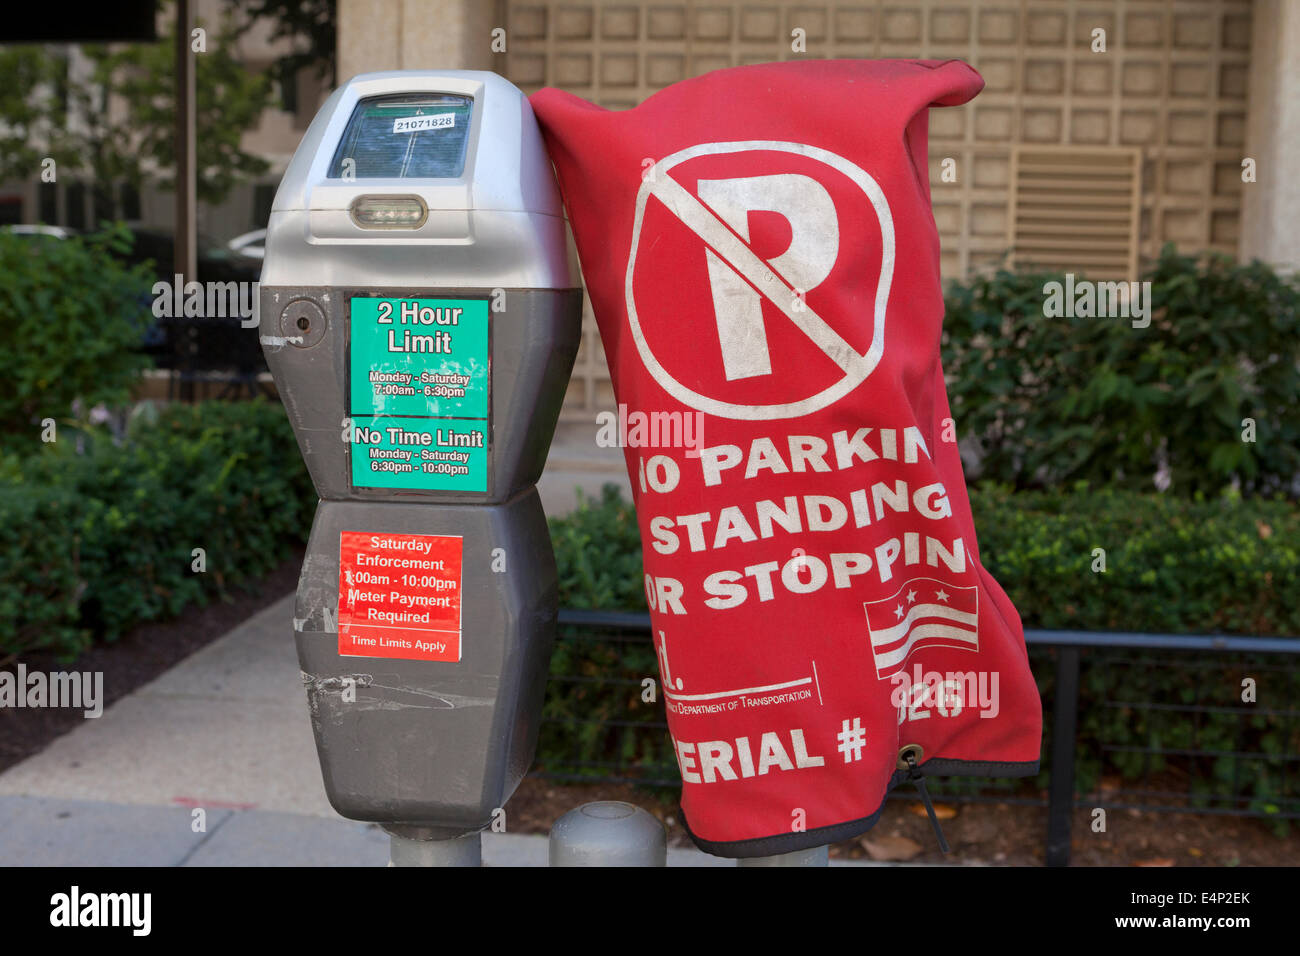 Kein Parkplatz-Schild an der Parkuhr - USA Stockfotografie - Alamy